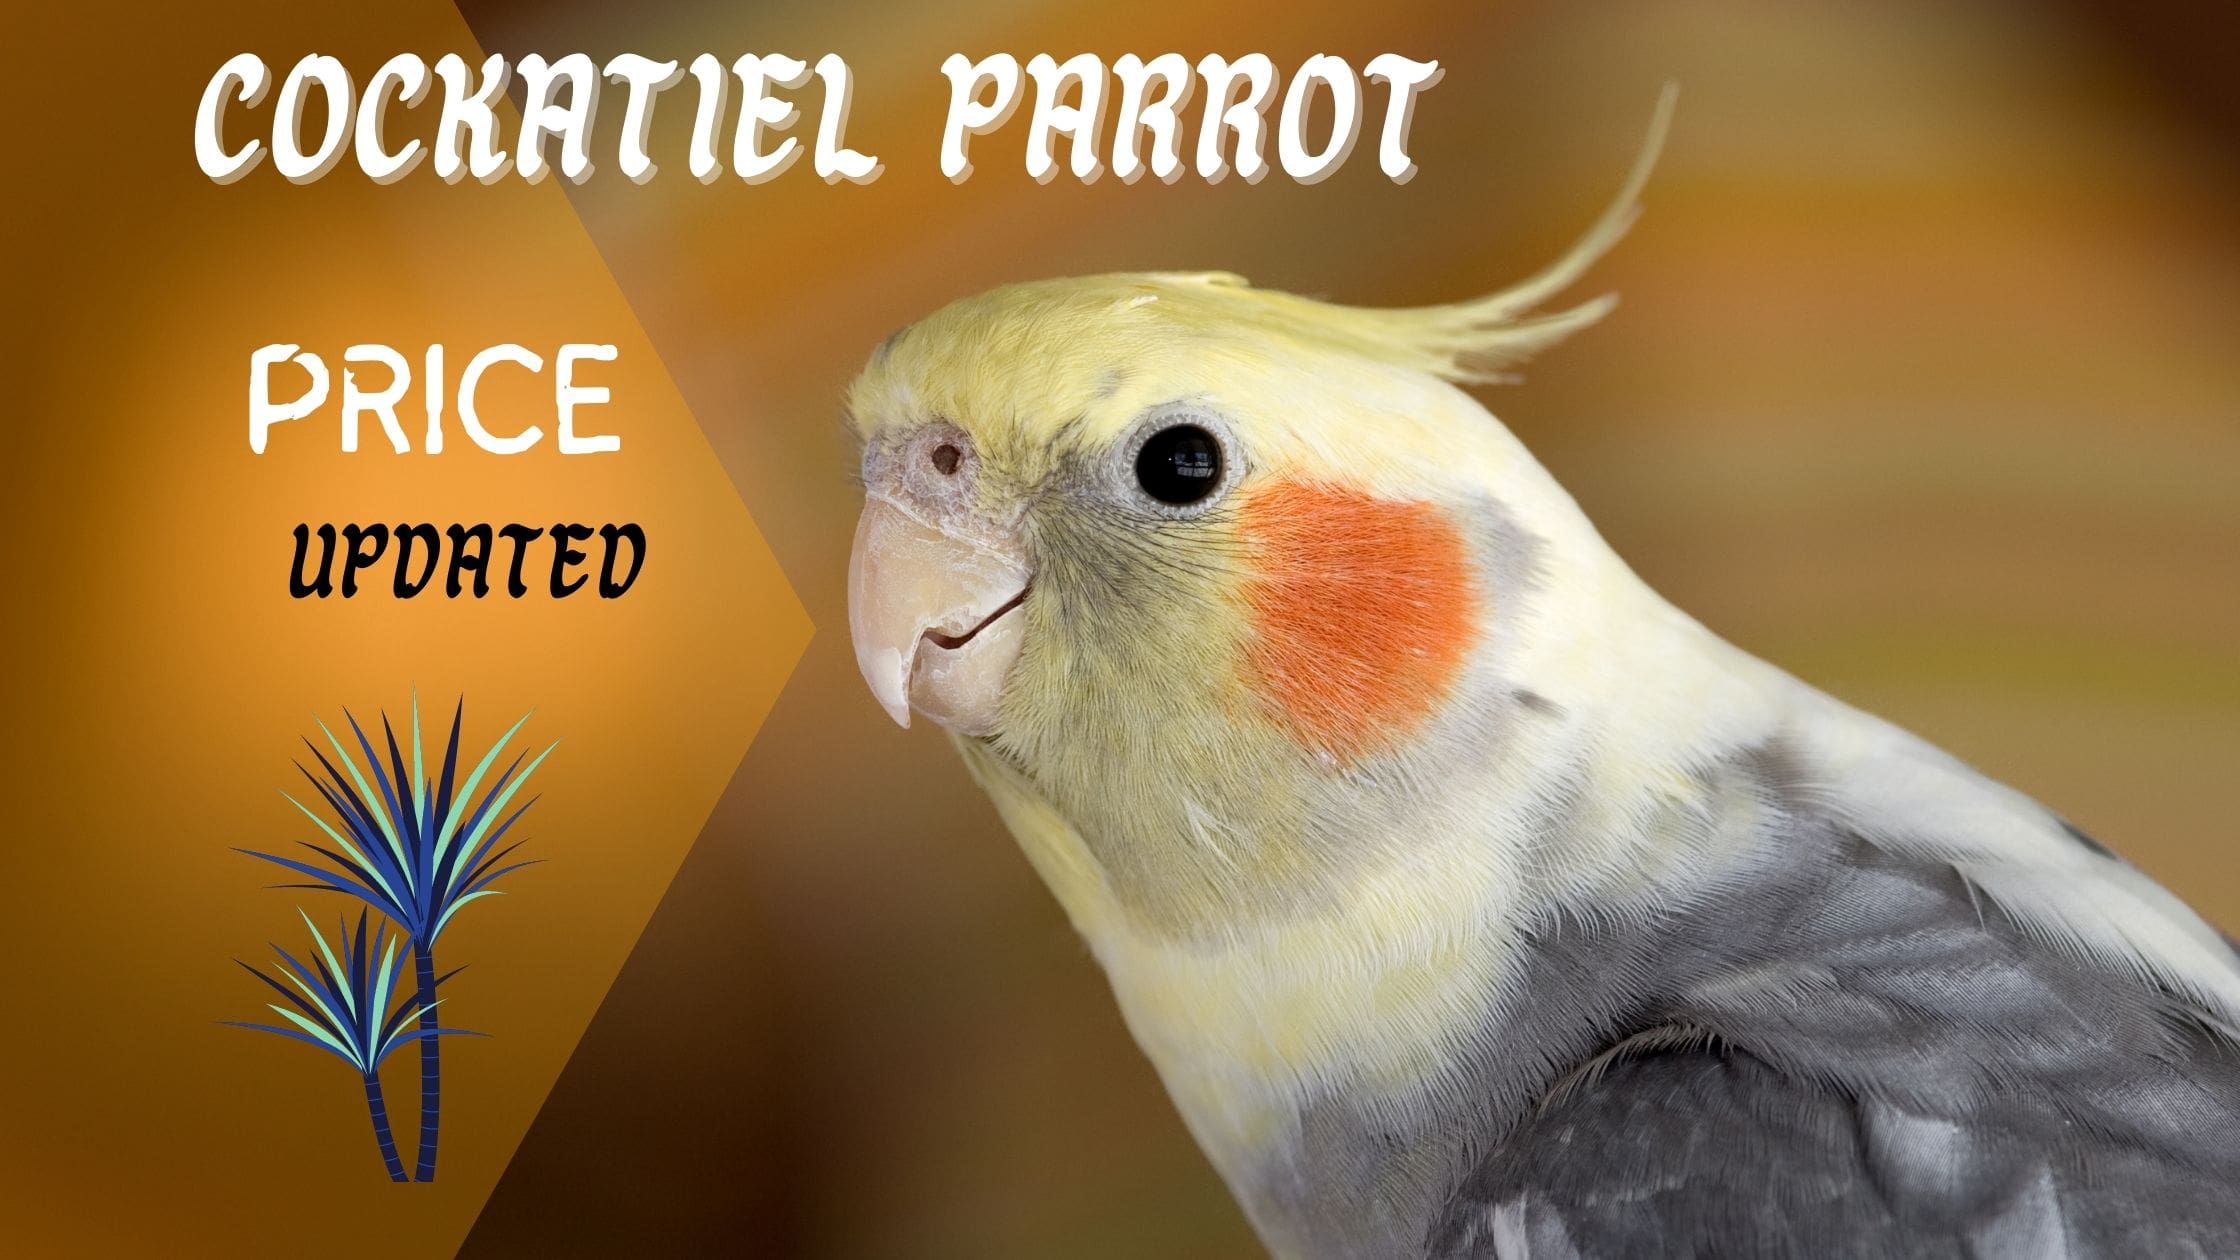 Cockatiel Parrot Price main